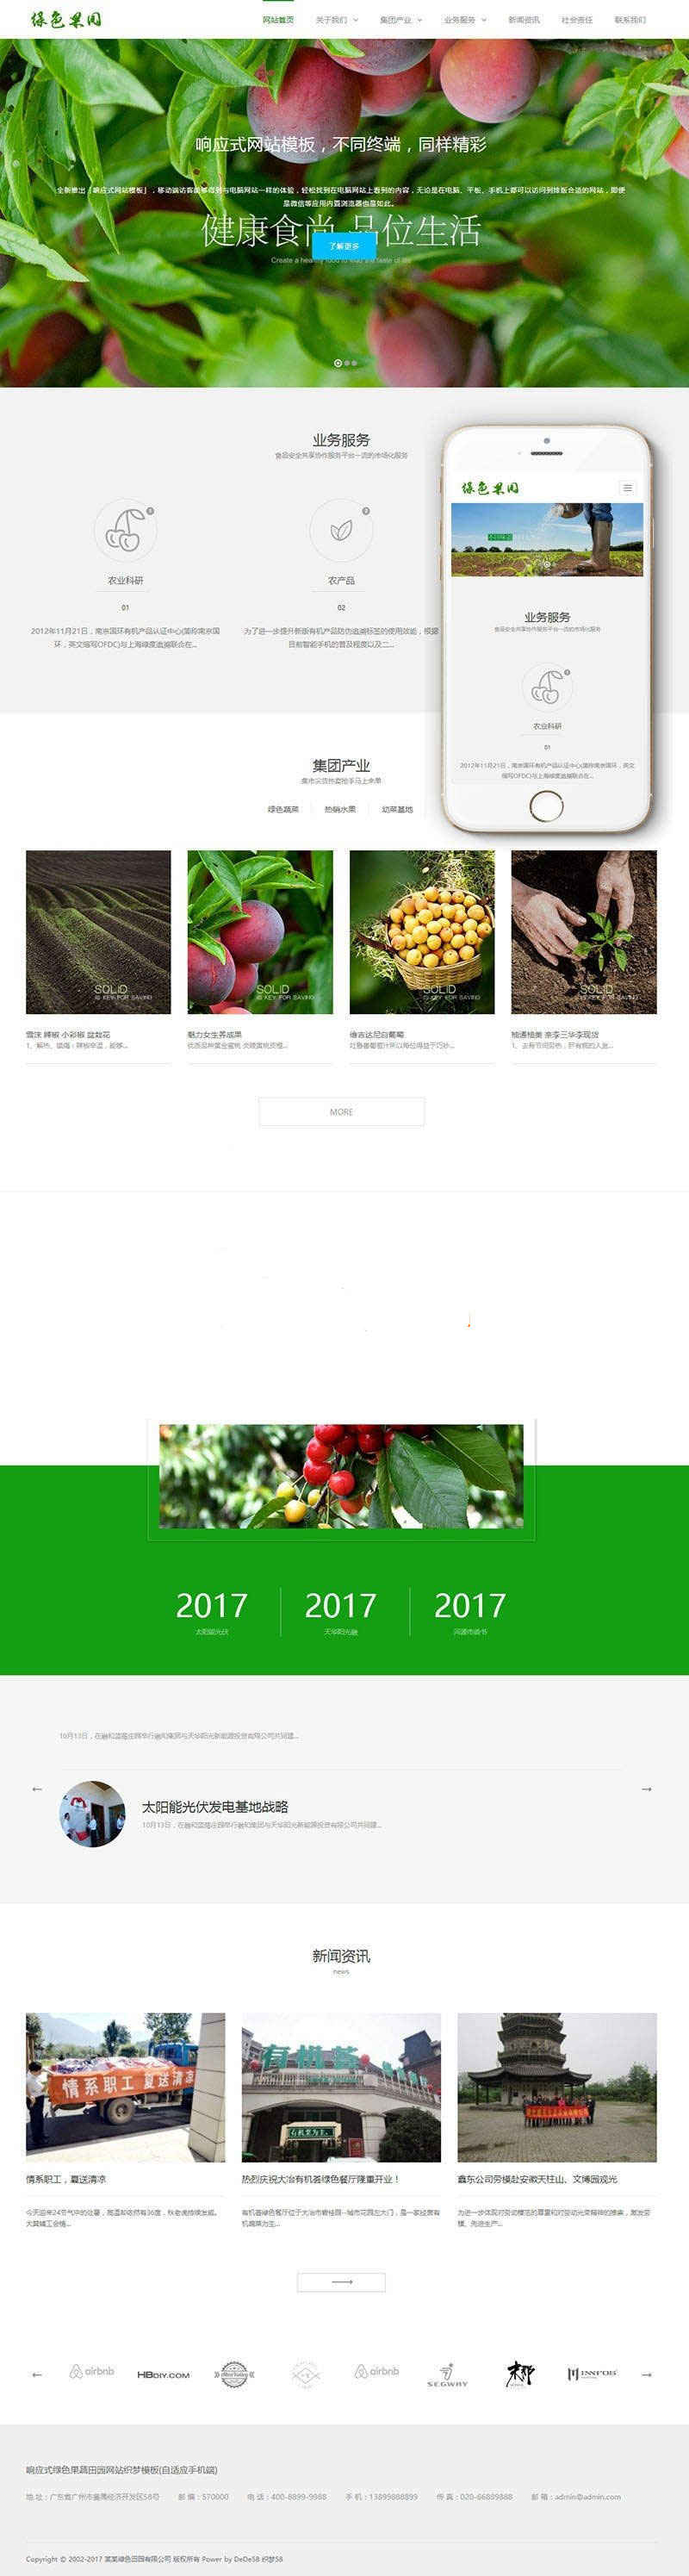 织梦dedecms响应式绿色水果蔬菜农业公司网站模板(自适应手机移动端)插图